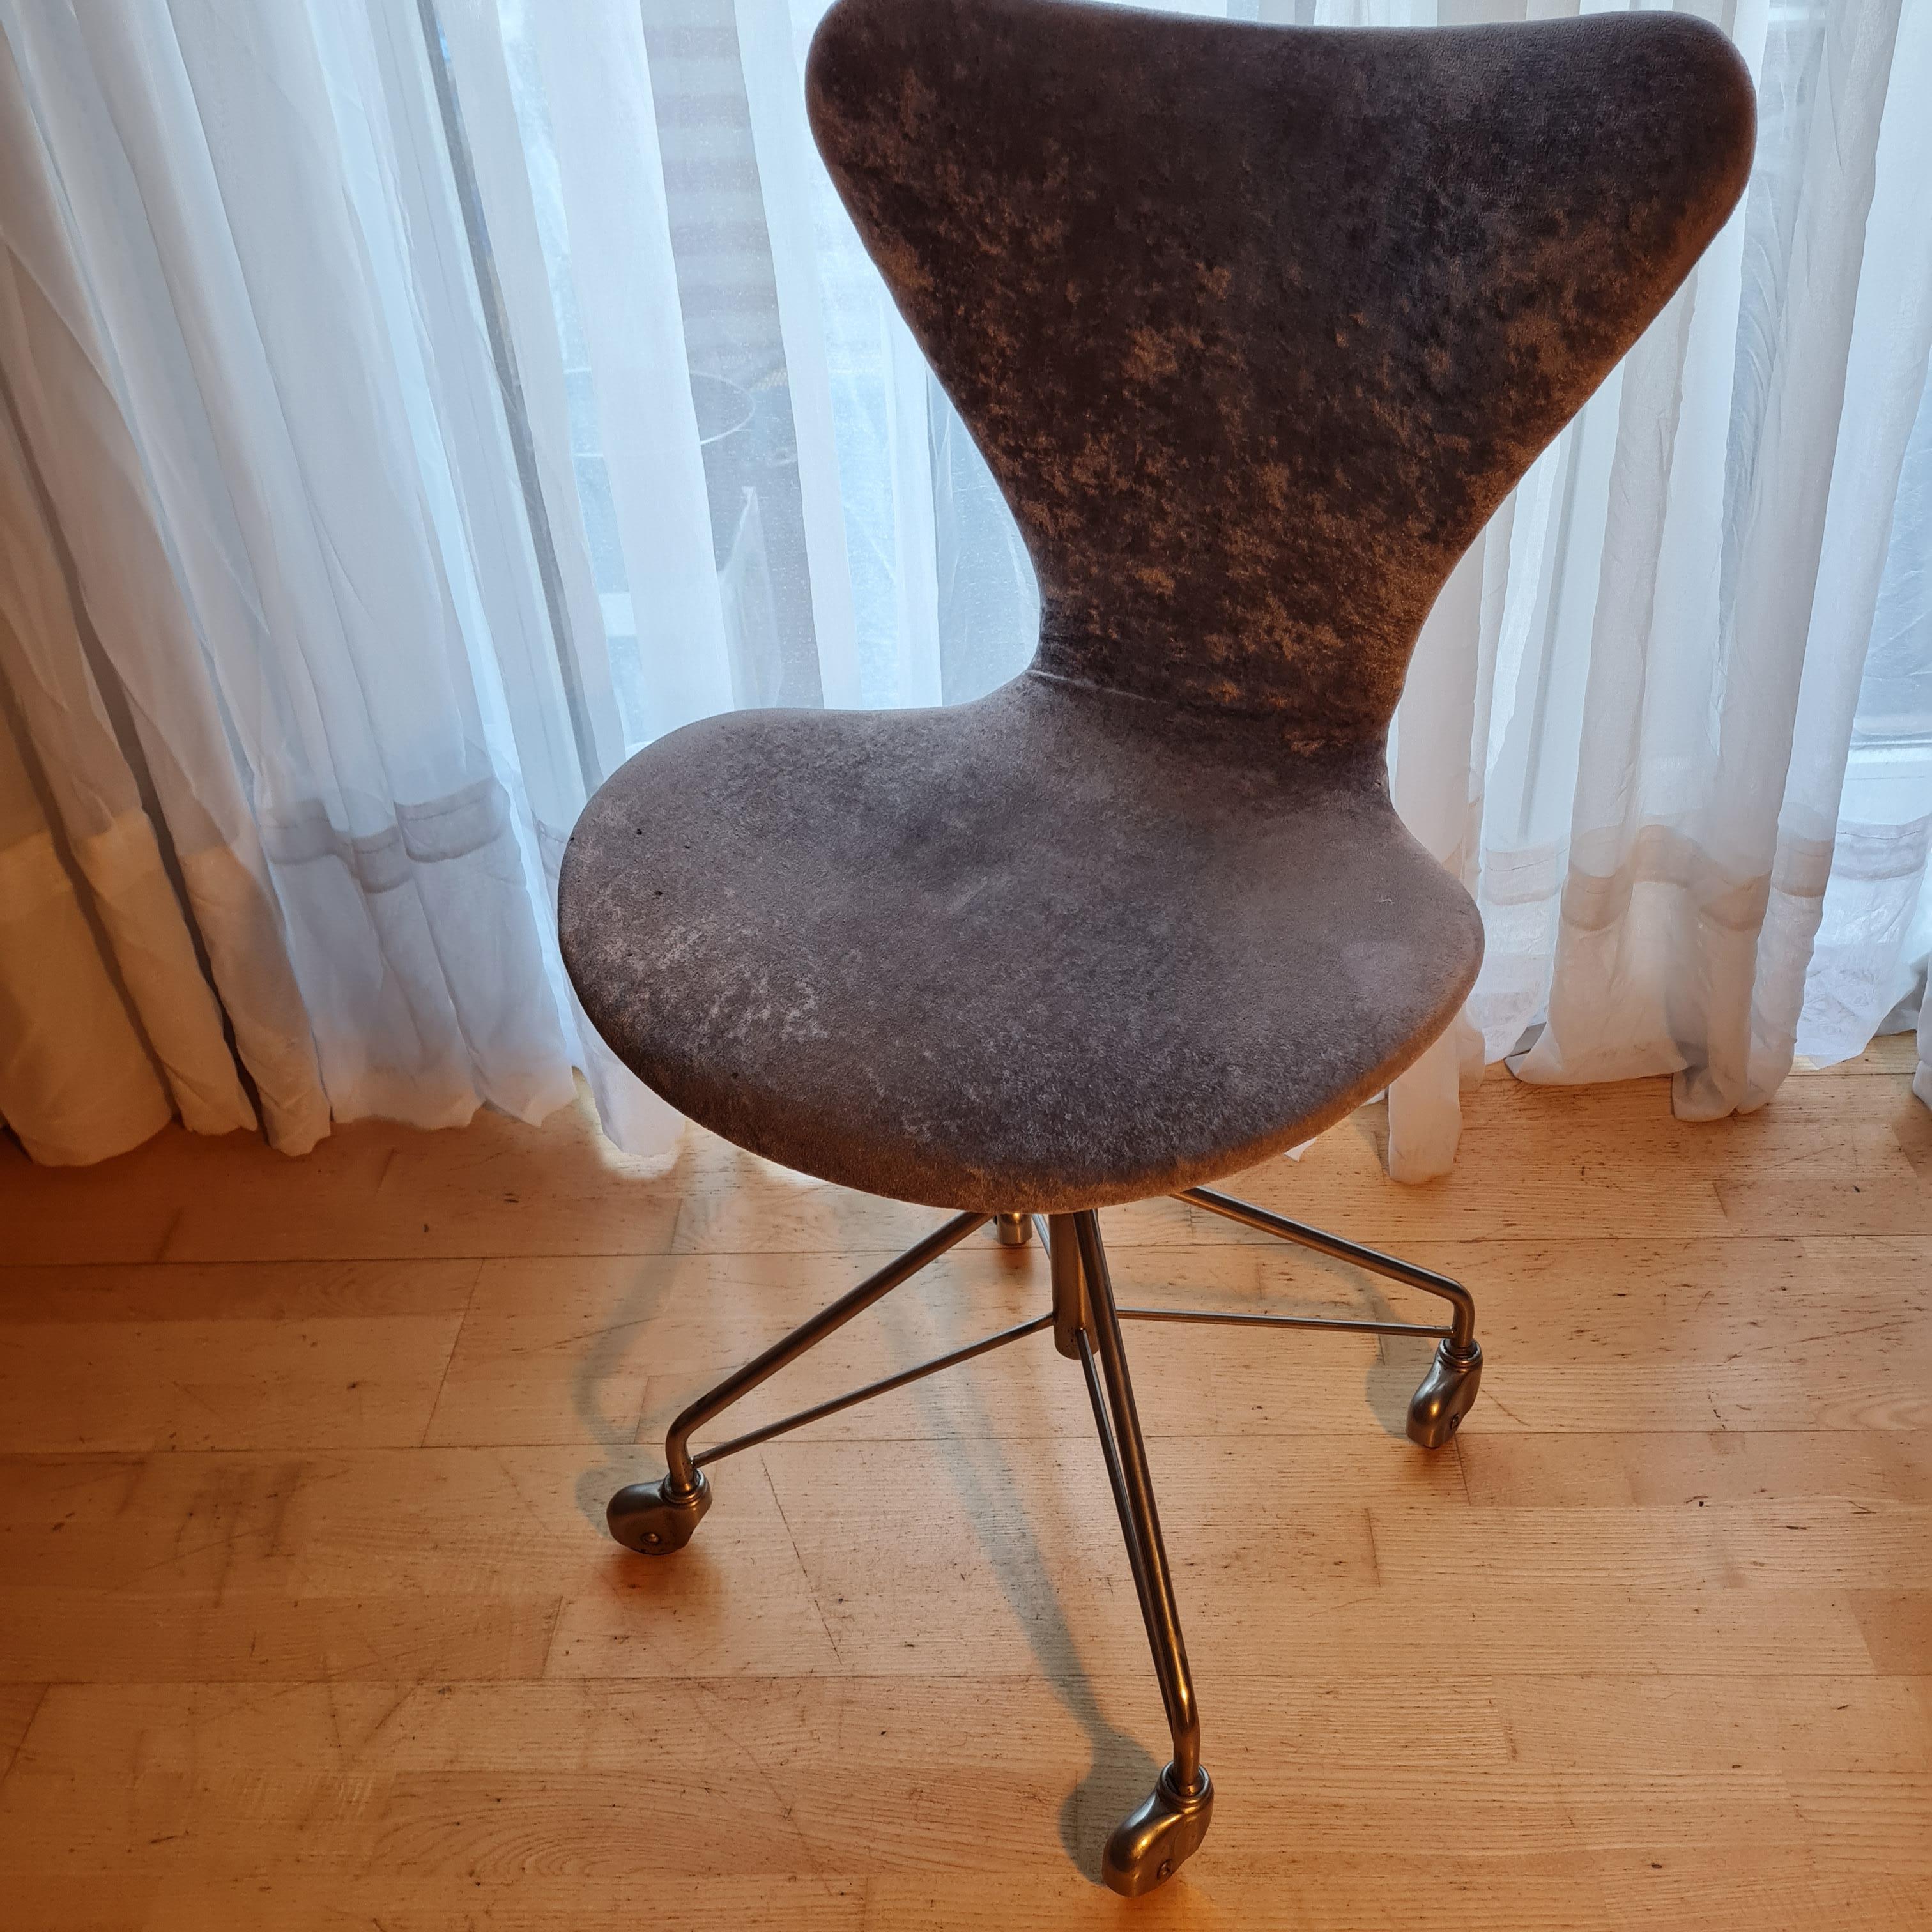 Arne Jacobsen Schreibtisch-Drehstuhl Model 3117 Bürostuhl.

Originales Vier-Sterne-Drehgestell der ersten Serie mit verchromten Stahlfüßen auf Rollen. 

Der Stuhl ist neu gepolstert, neu bezogen und komplett überholt

Entworfen von Arne Jacobsen im